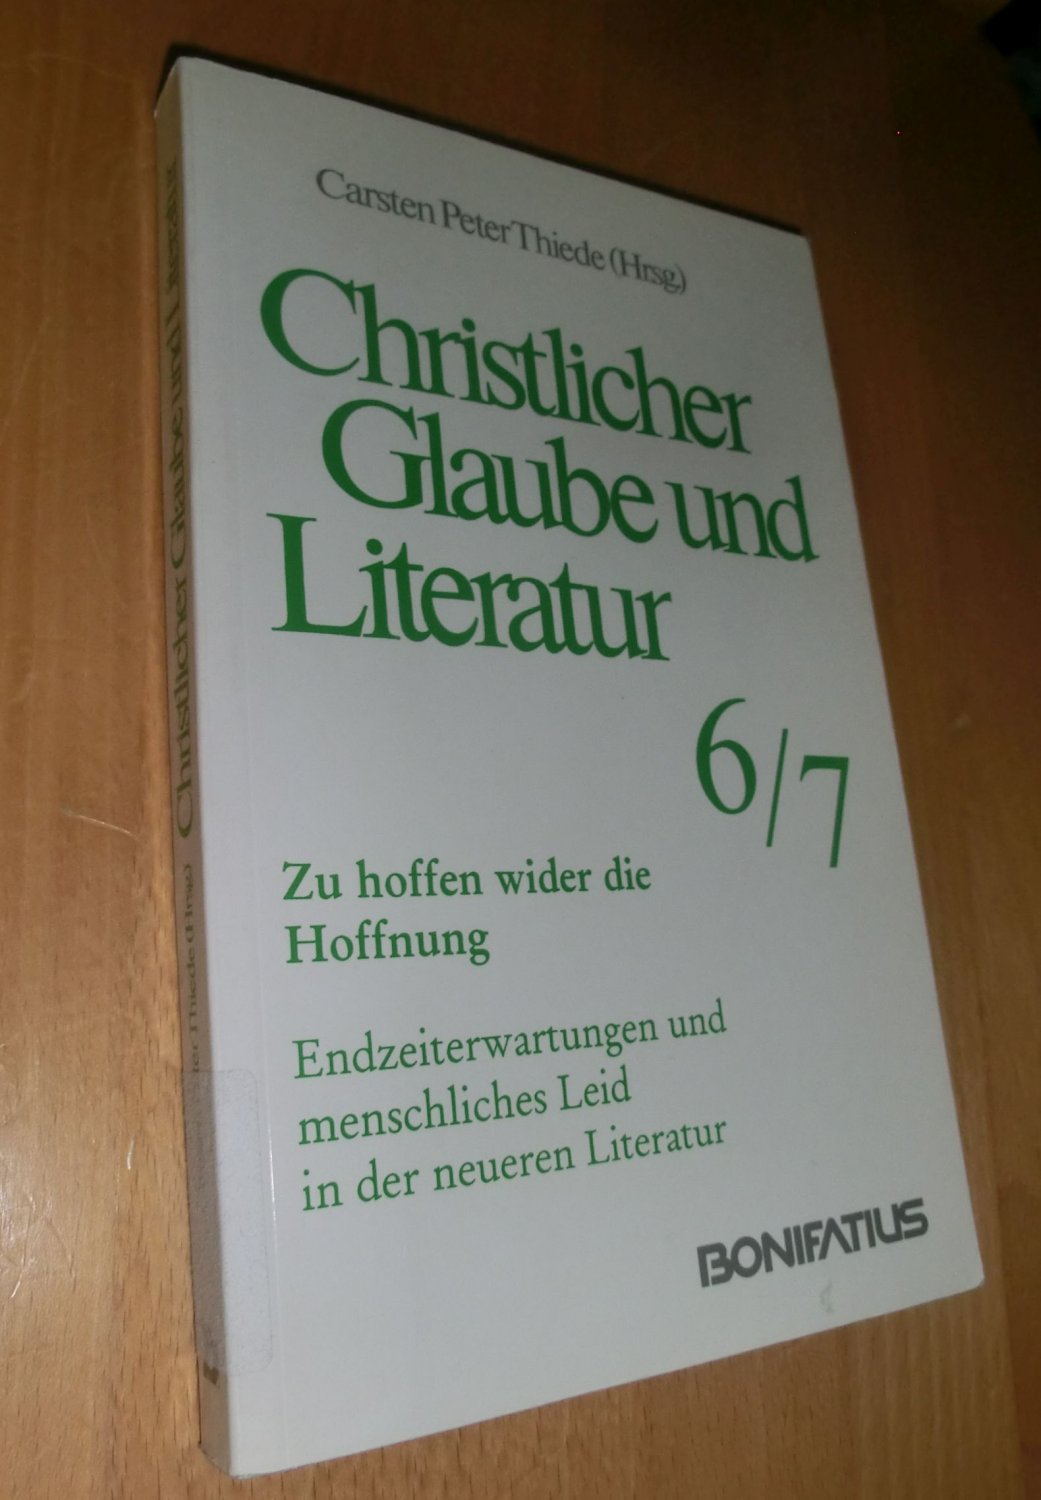 Christlicher Glaube und Literatur - Thiede, Carsten Peter( Hrsg.)